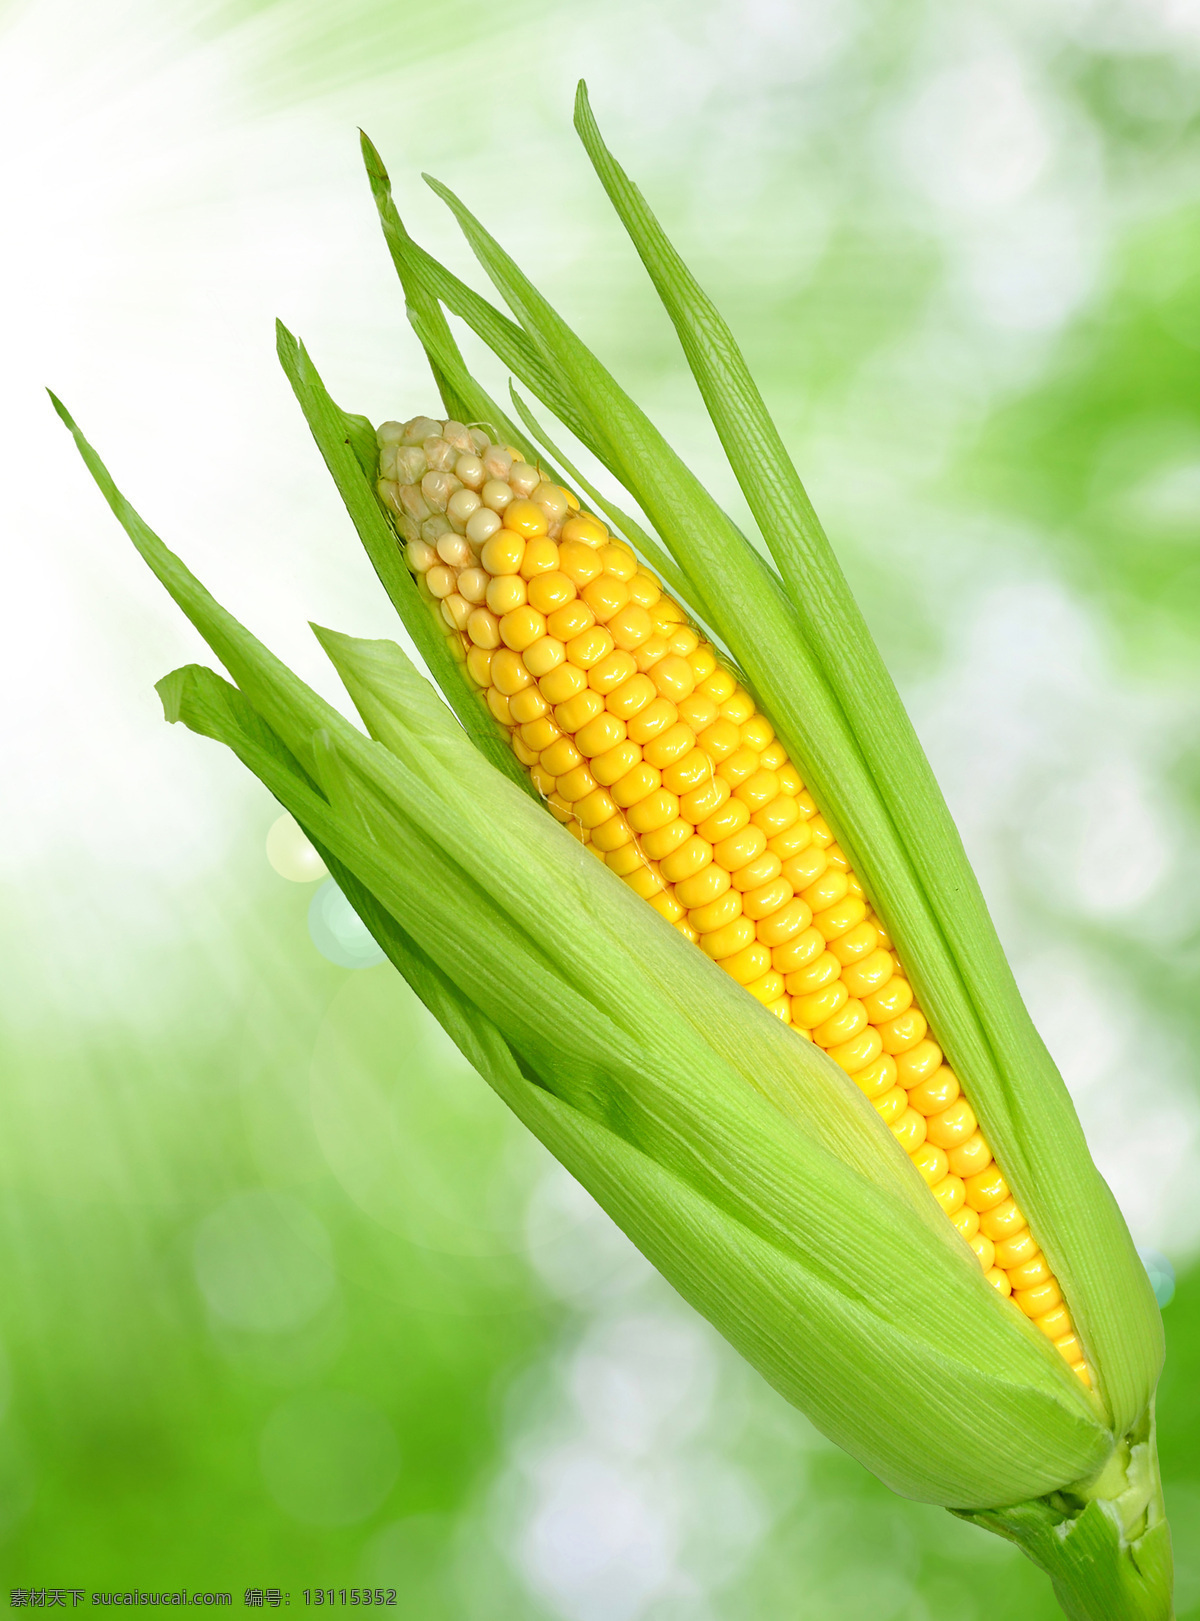 玉米 玉米棒 包谷 食物 苞米 食品 金黄色玉米 粮食 农产品 食材 食物原料 餐饮美食 食材原料 生物世界